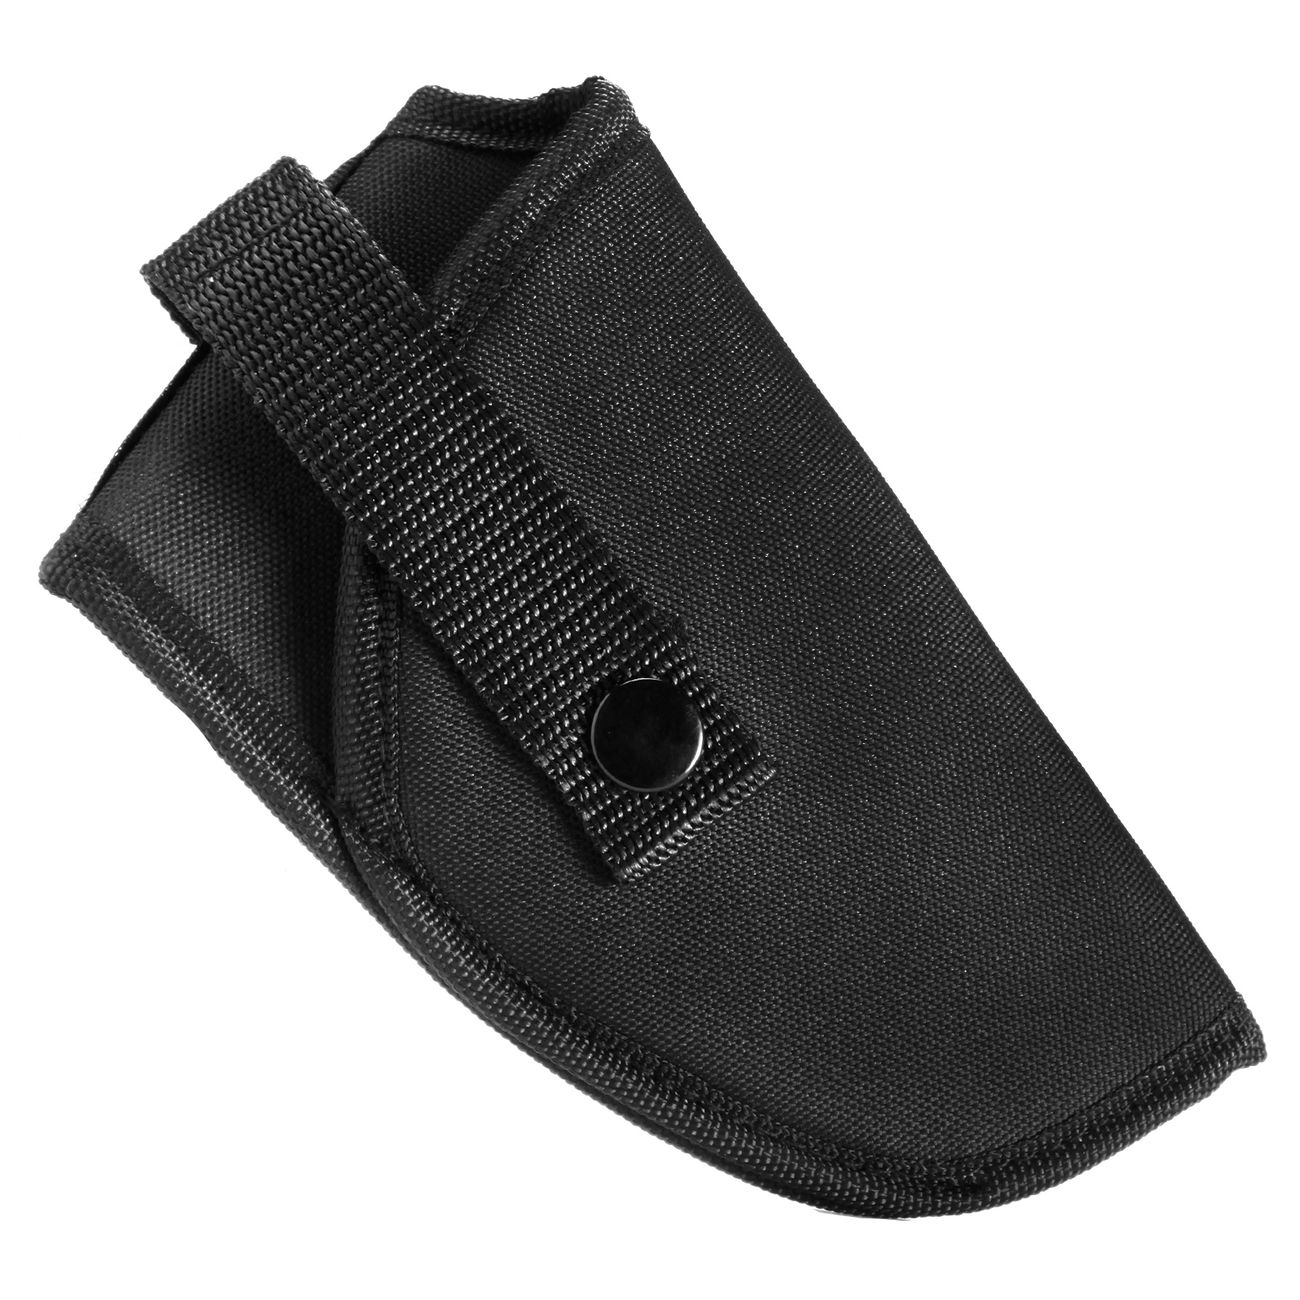 Coptex Gürtelholster schwarz für kleine Pistolen und Revolver Bild 1